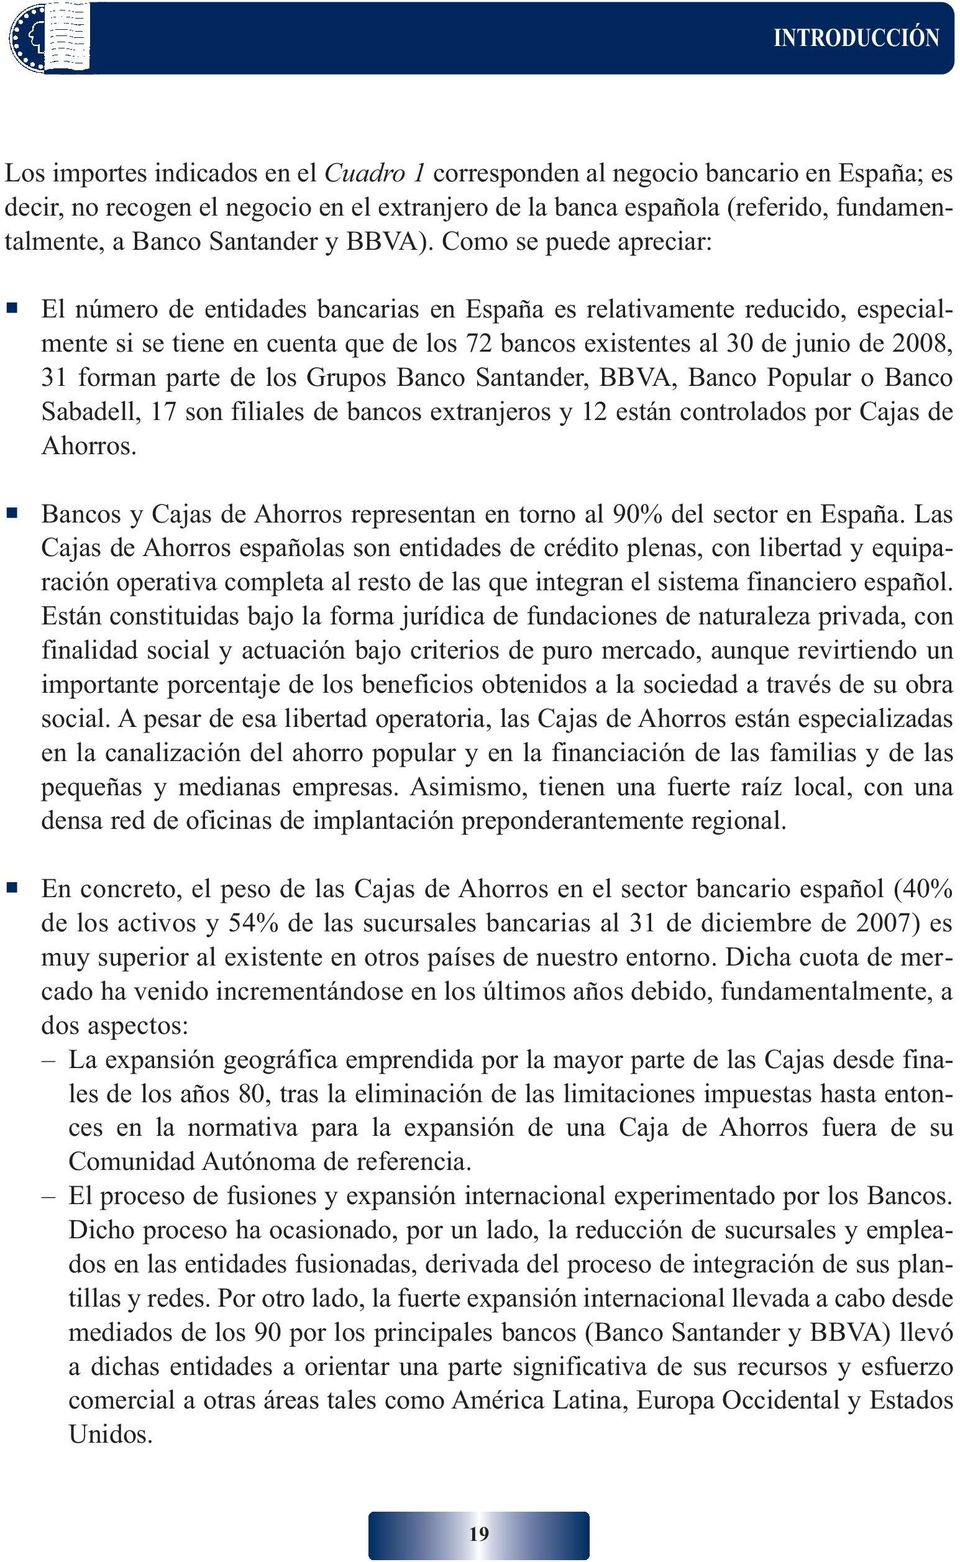 Como se puede apreciar: El número de entidades bancarias en España es relativamente reducido, especialmente si se tiene en cuenta que de los 72 bancos existentes al 30 de junio de 2008, 31 forman